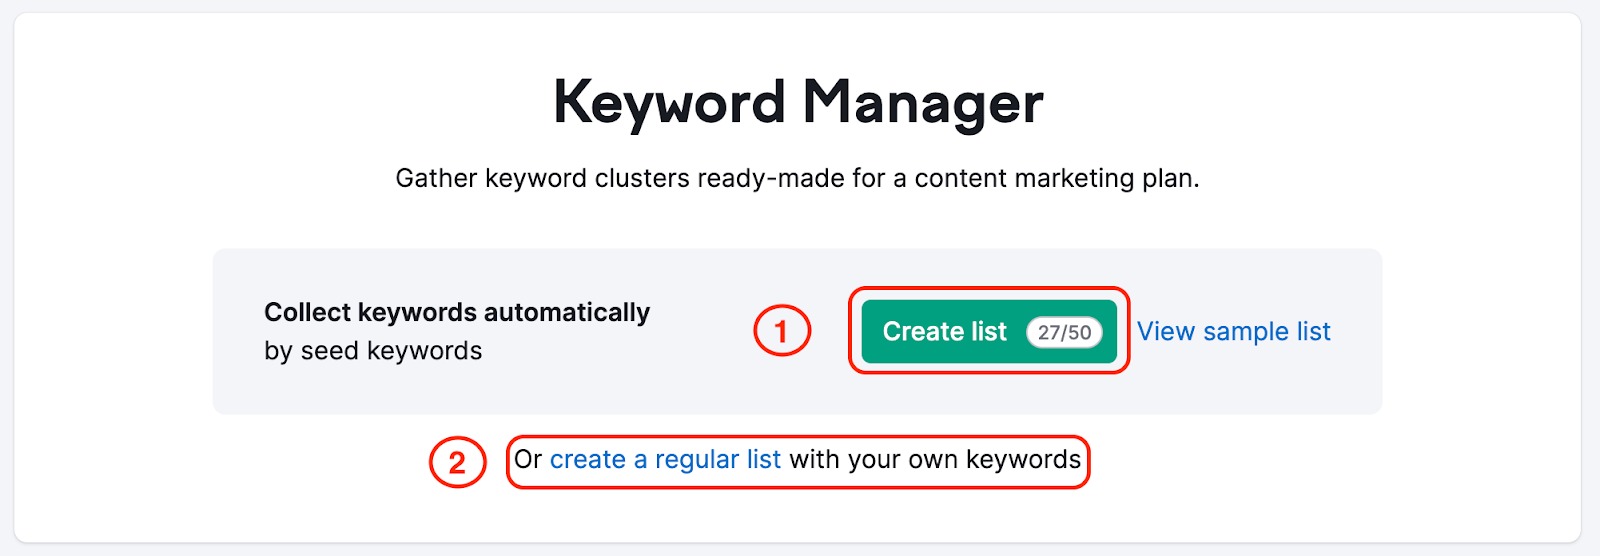 Landing page de Keyword Manager donde aparecen resaltados en unos rectángulos en rojo el botón "Crear lista" para crear una lista de palabras agrupadas y, debajo, el botón "Crear una lista normal". 